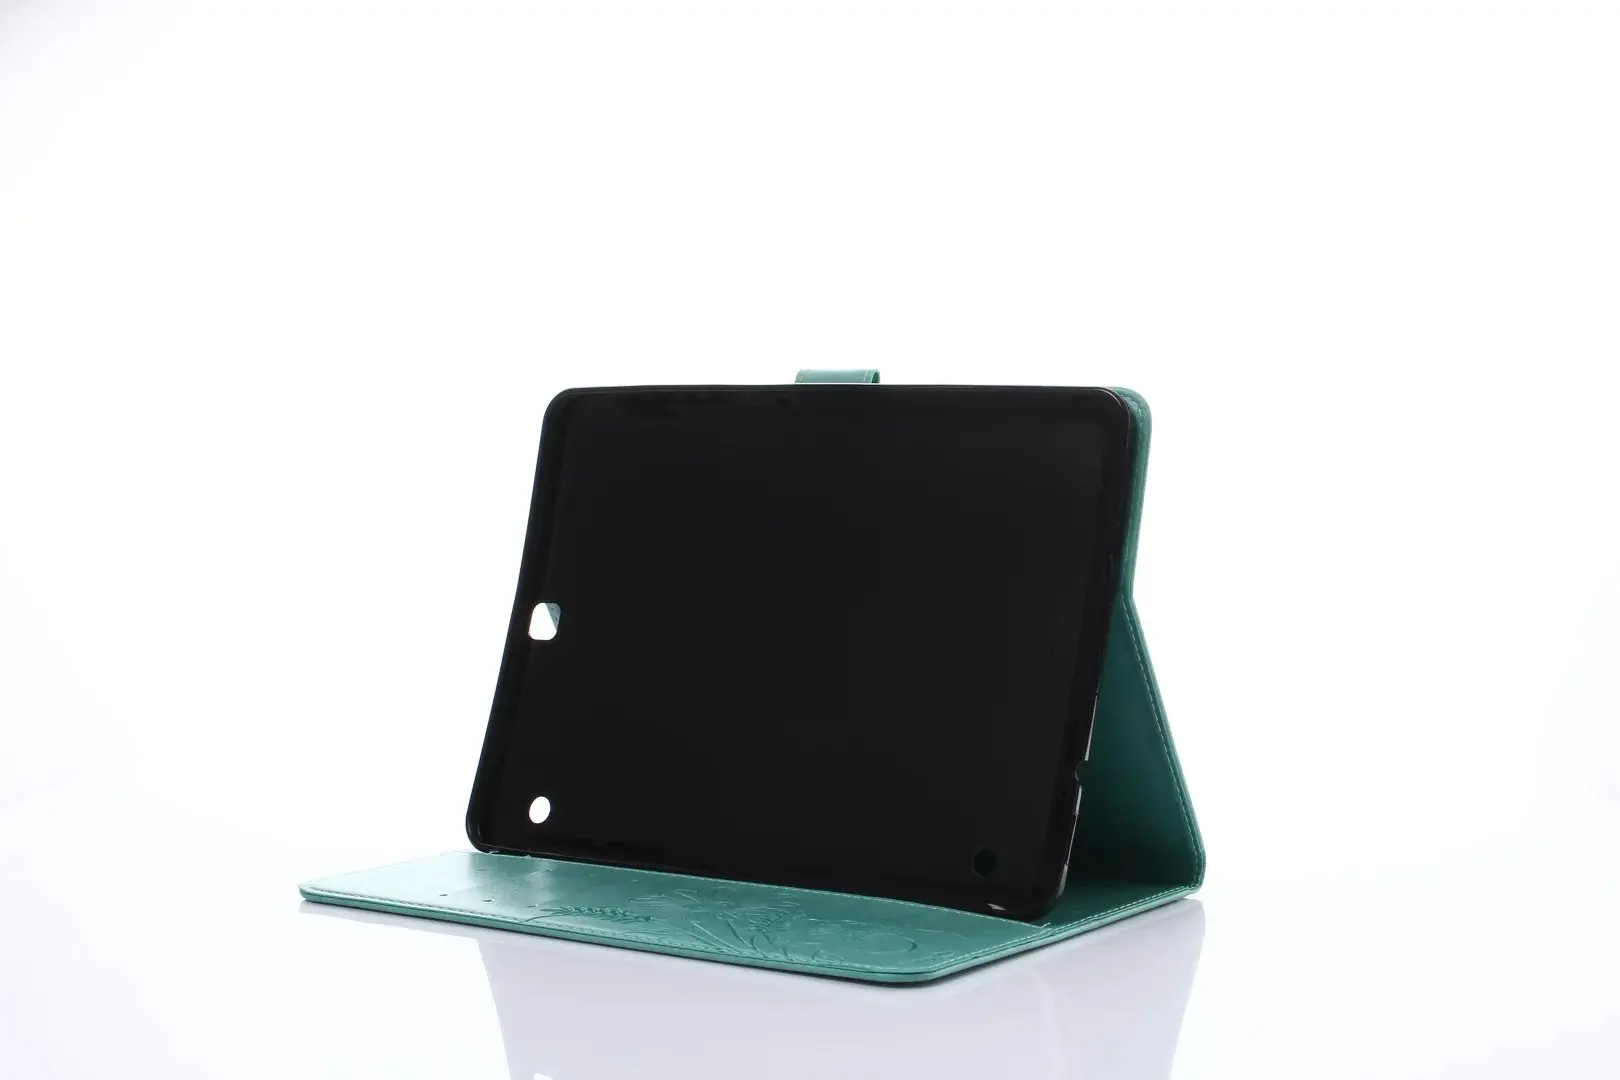 Чехол-подставка для samsung Galaxy Tab S2 9,7 чехол из искусственной кожи складной чехол для samsung Tab S2 9,7 SM-T815 T810 T813 T819 планшет+ ручка